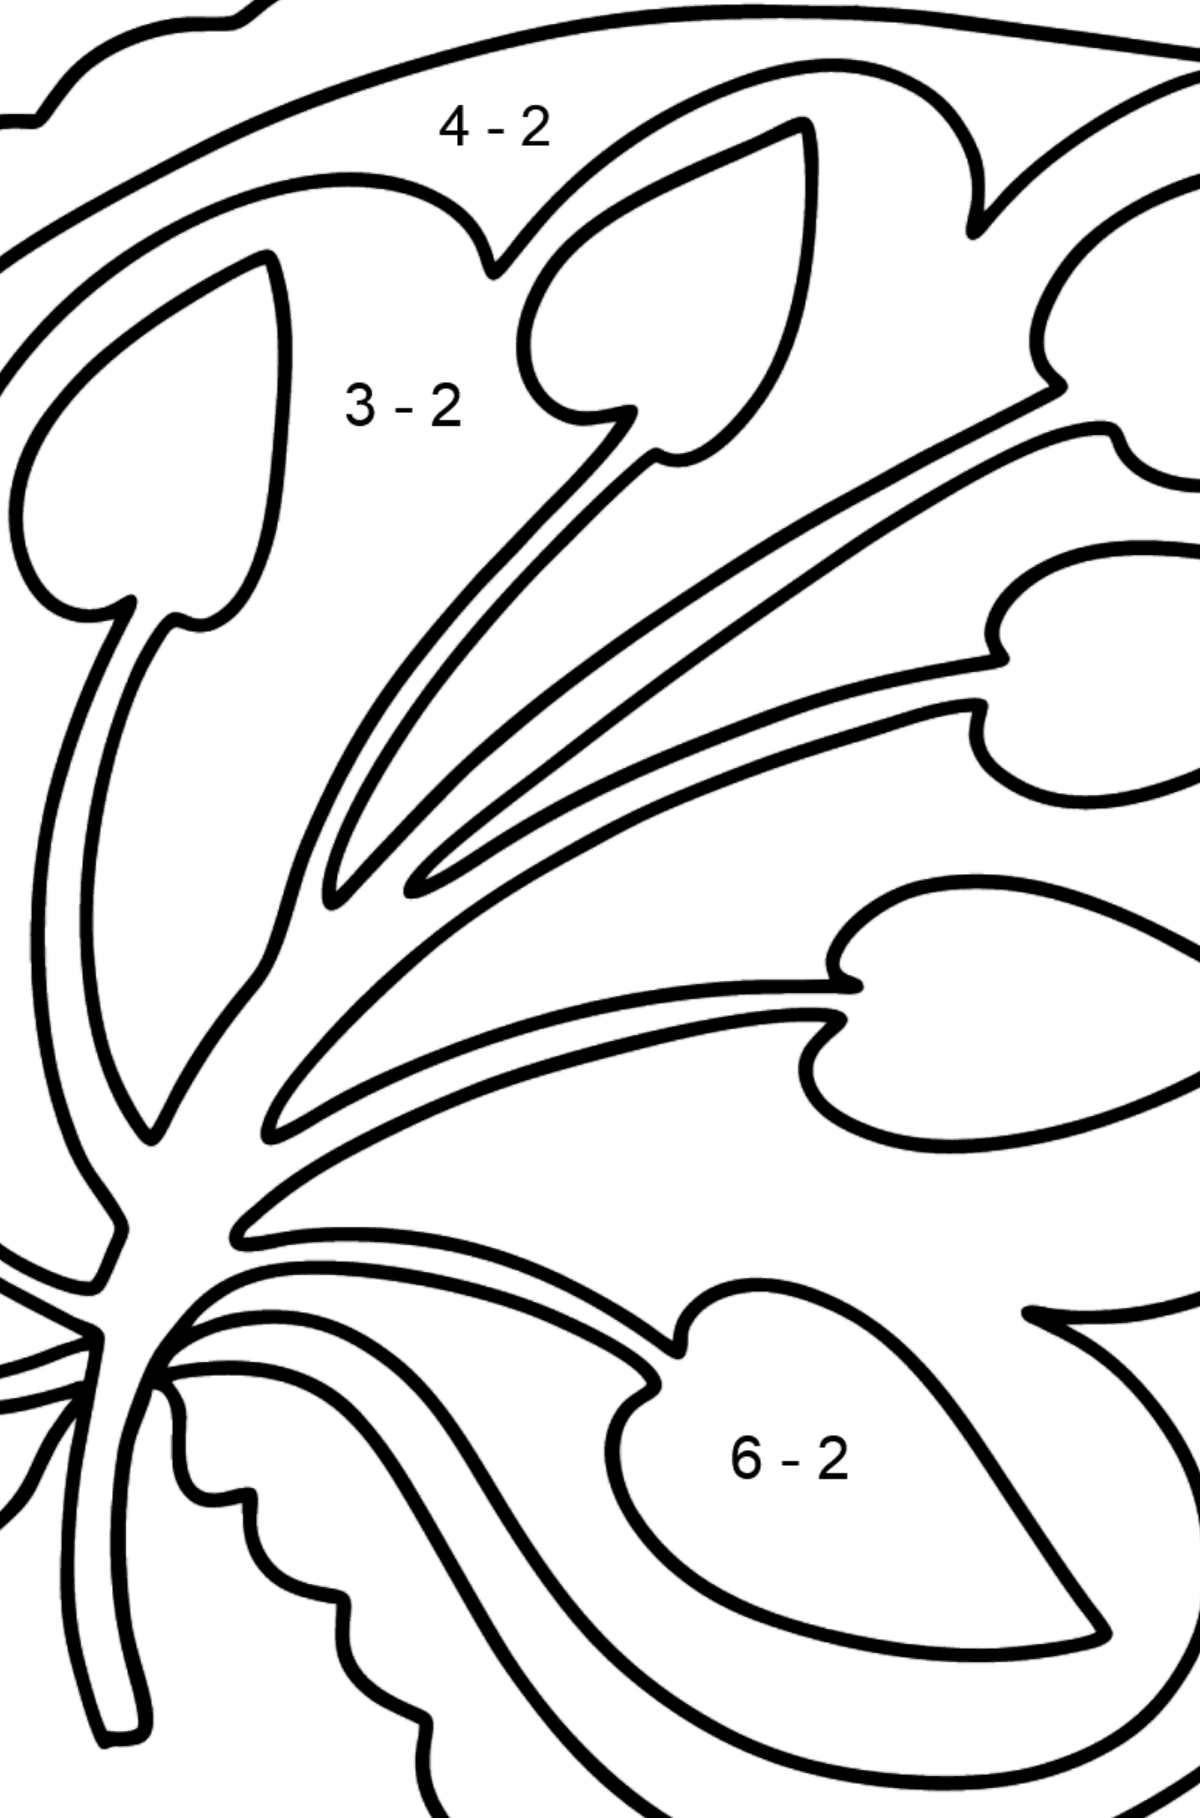 Ausmalbild Königsblatt - Mathe Ausmalbilder - Subtraktion für Kinder